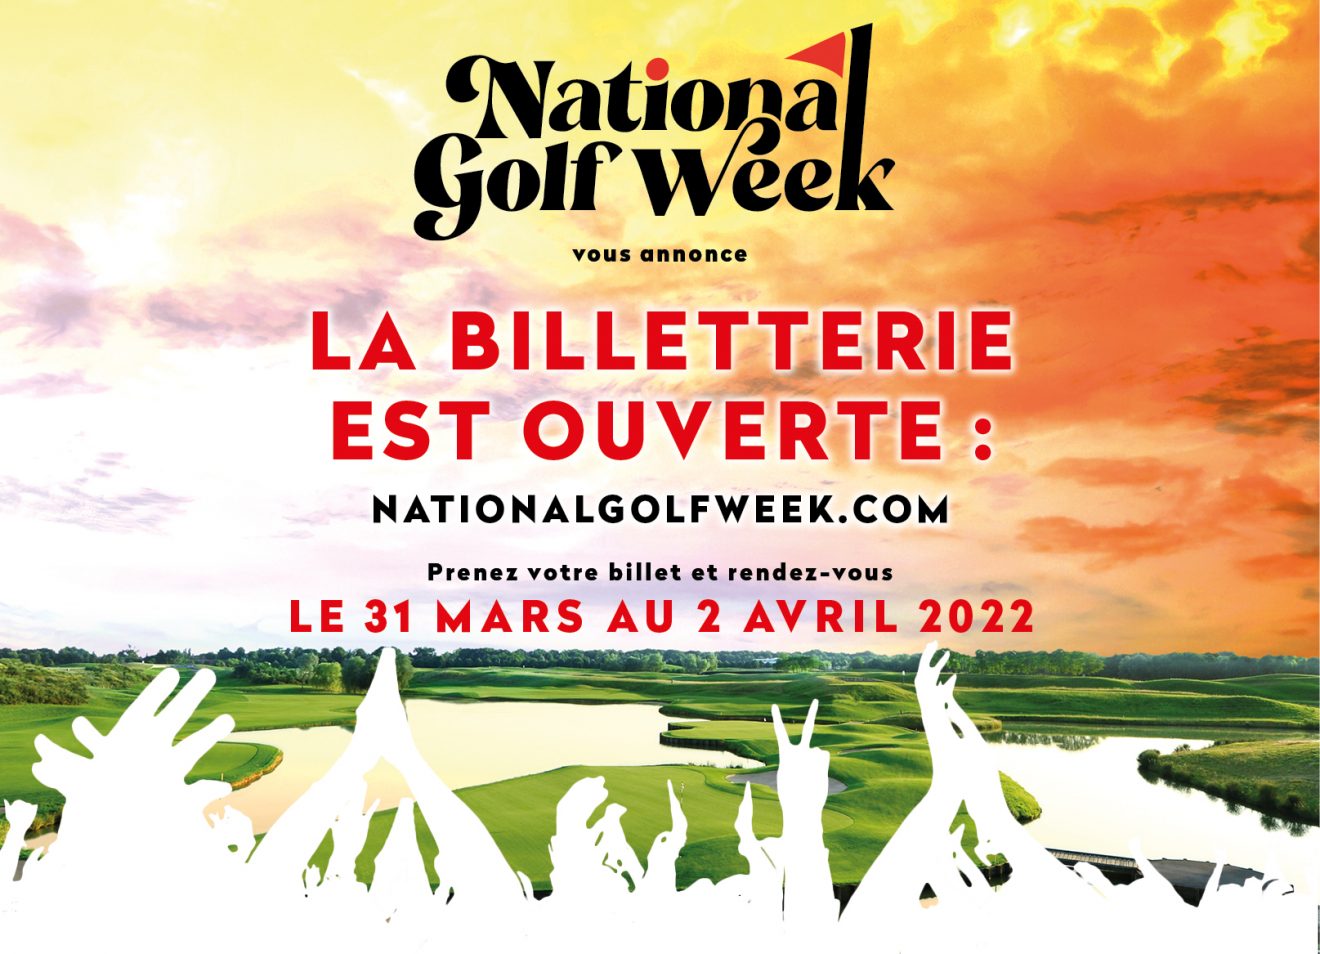 La National Golf Week approche ! Réservez vos places dès maintenant